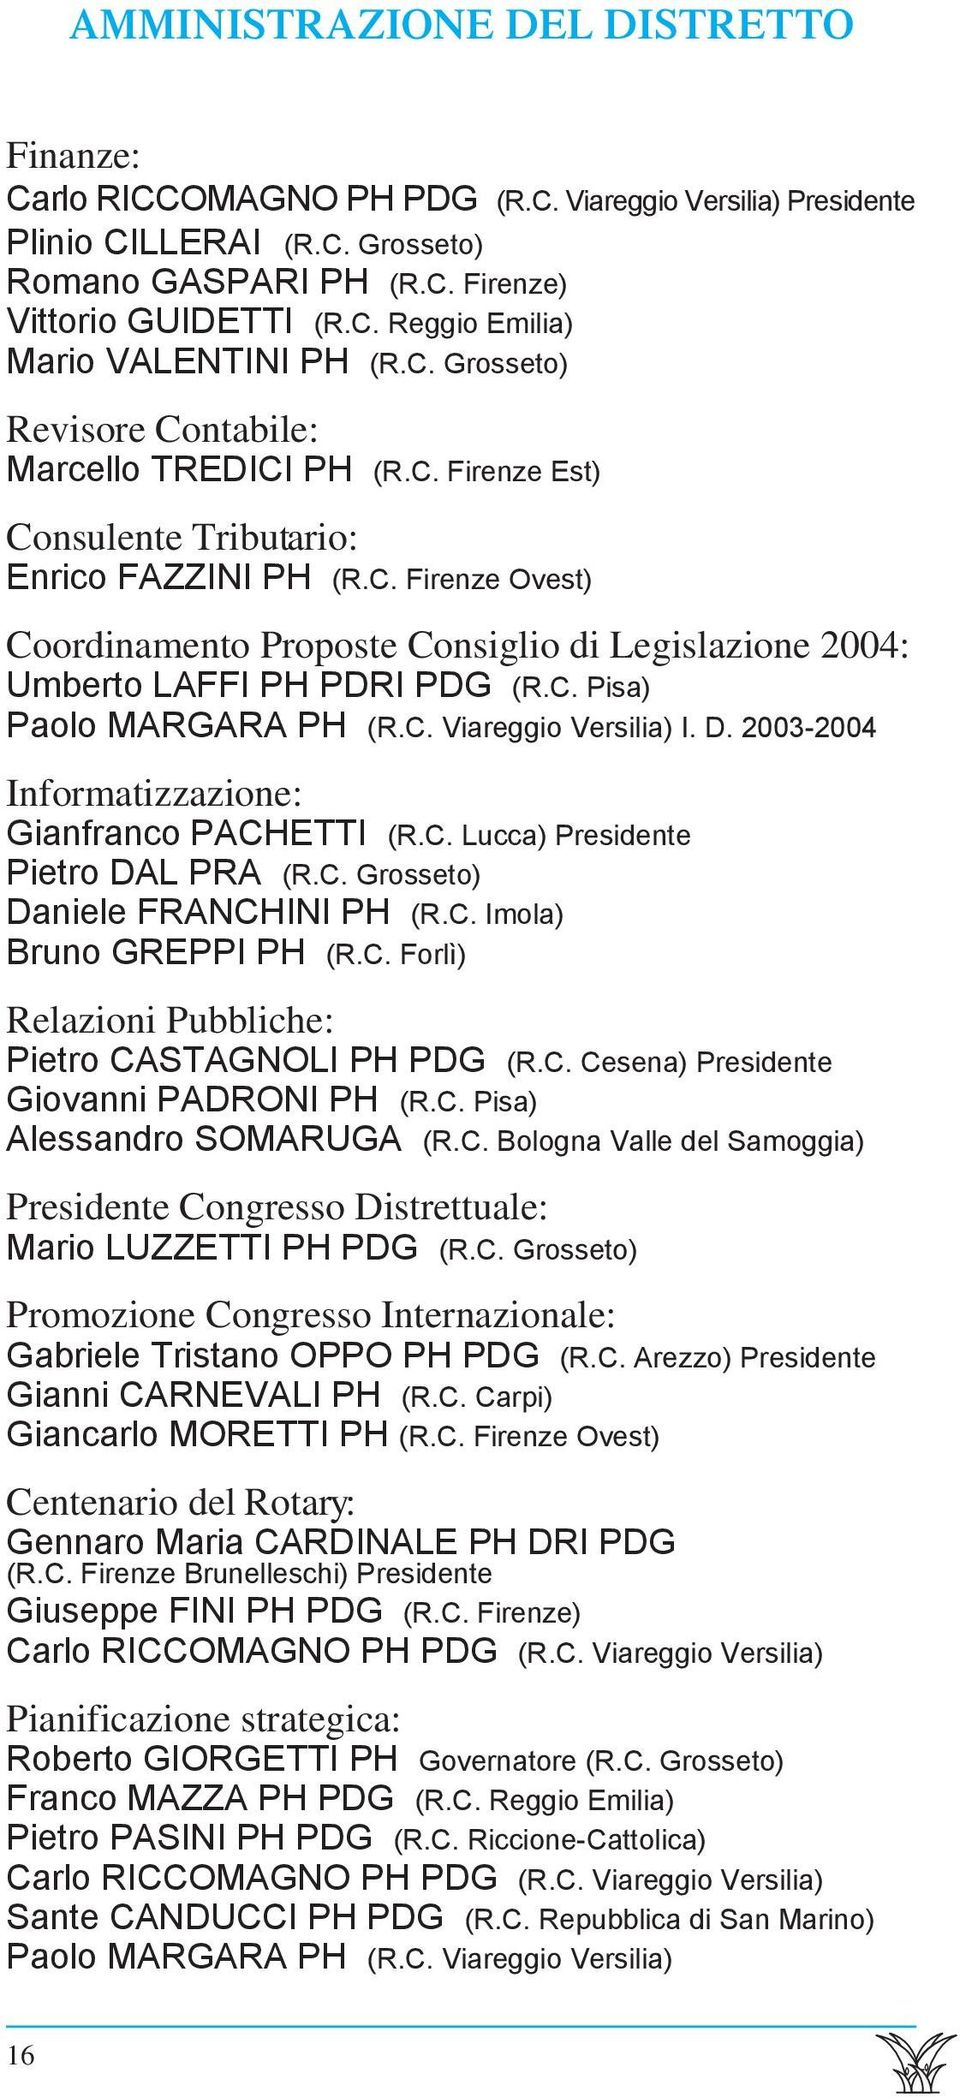 C. Pisa) Paolo MARGARA PH (R.C. Viareggio Versilia) I. D. 2003-2004 Informatizzazione: Gianfranco PACHETTI (R.C. Lucca) Presidente Pietro DAL PRA (R.C. Grosseto) Daniele FRANCHINI PH (R.C. Imola) Bruno GREPPI PH (R.